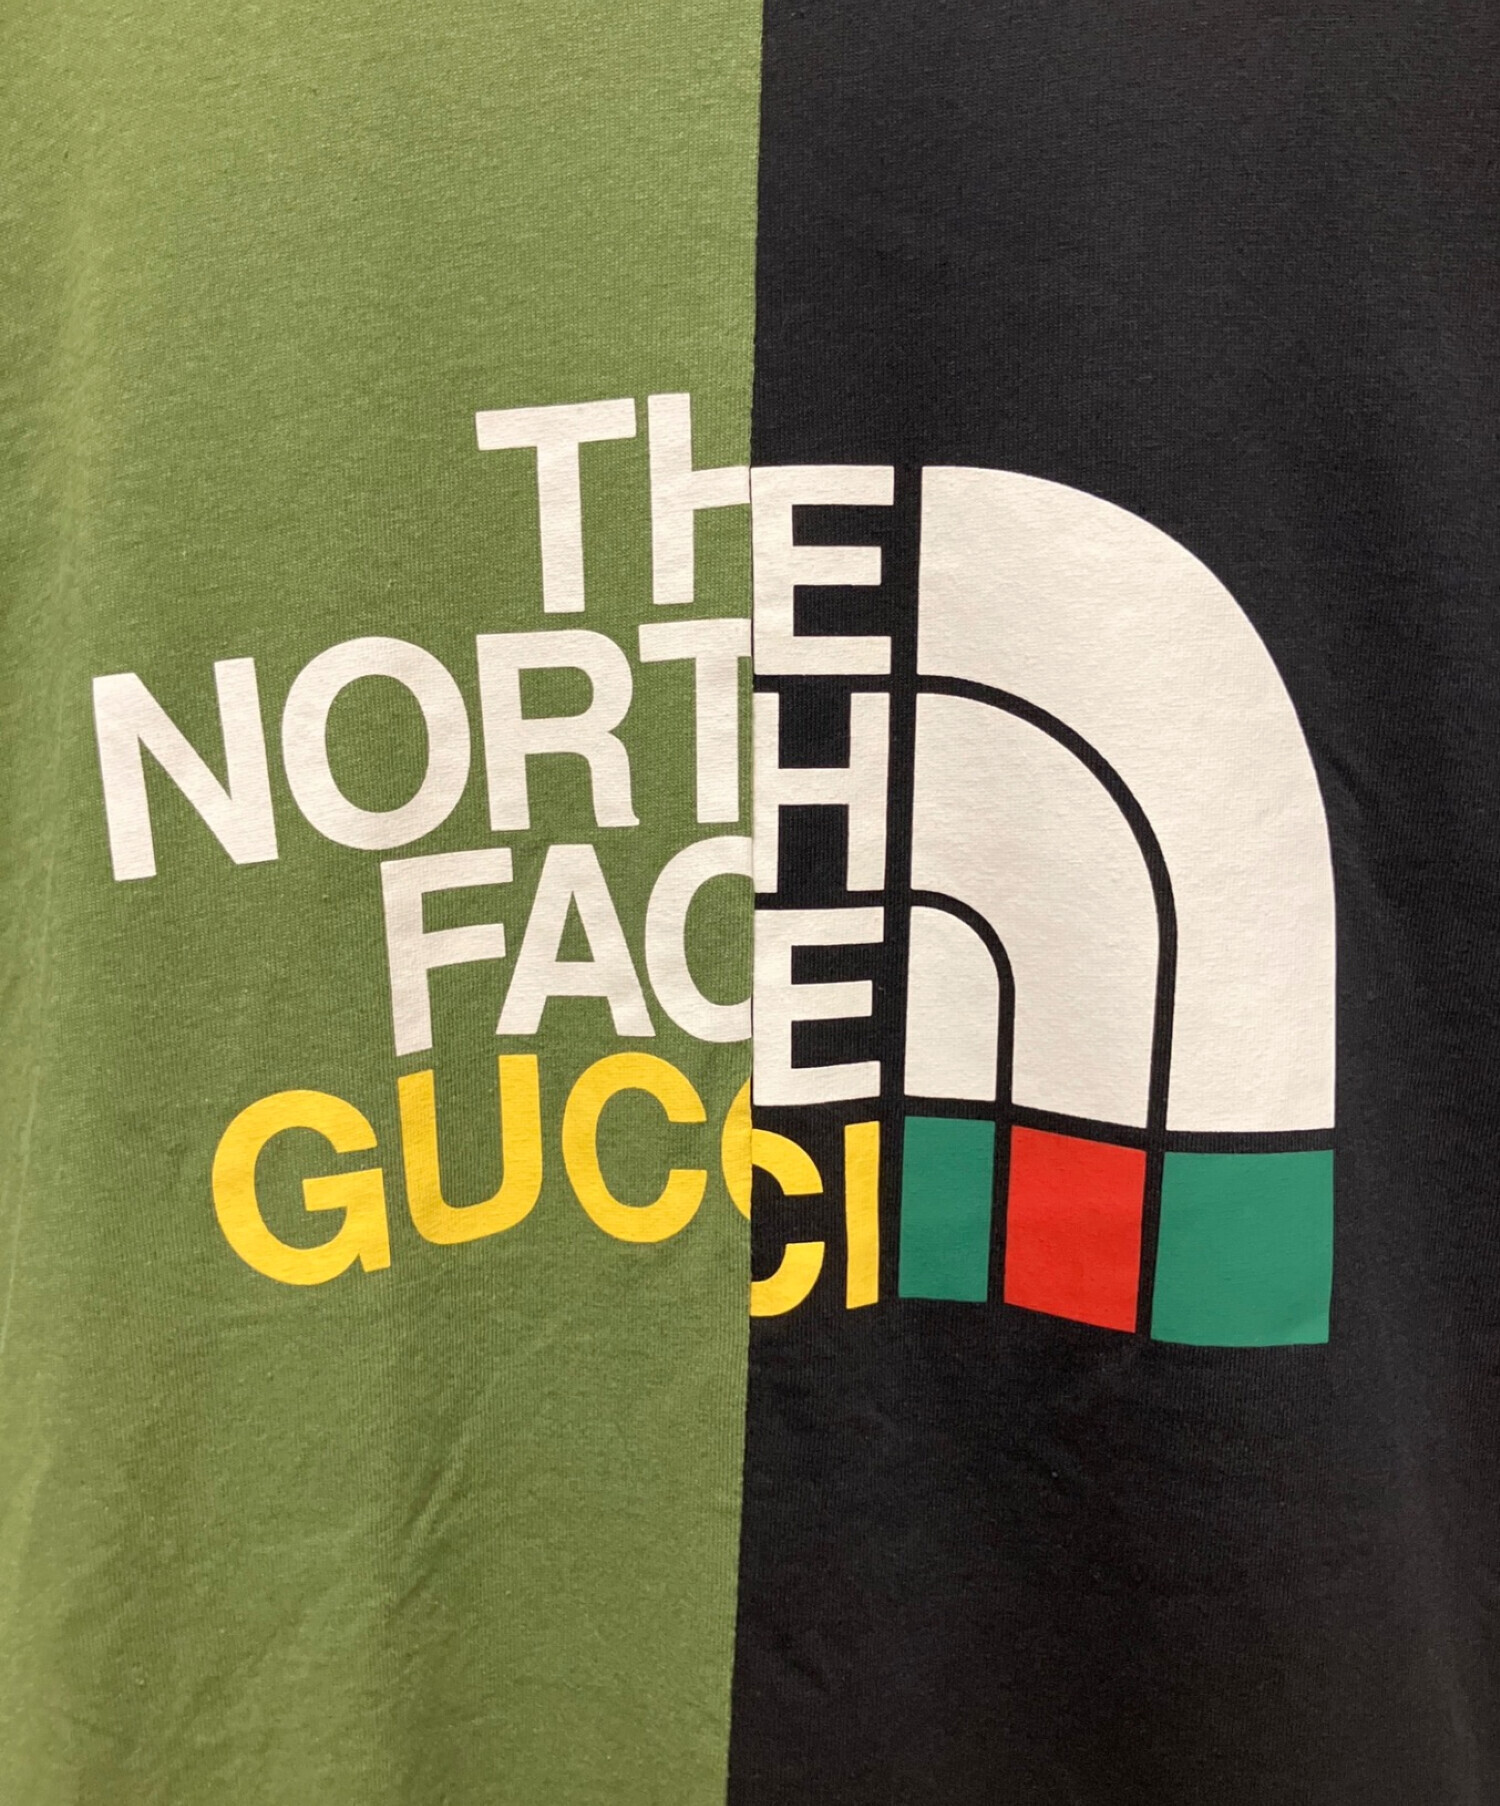 GUCCI (グッチ) THE NORTH FACE (ザ ノース フェイス) コラボバイカラーTシャツ グリーン×ブラック サイズ:XL